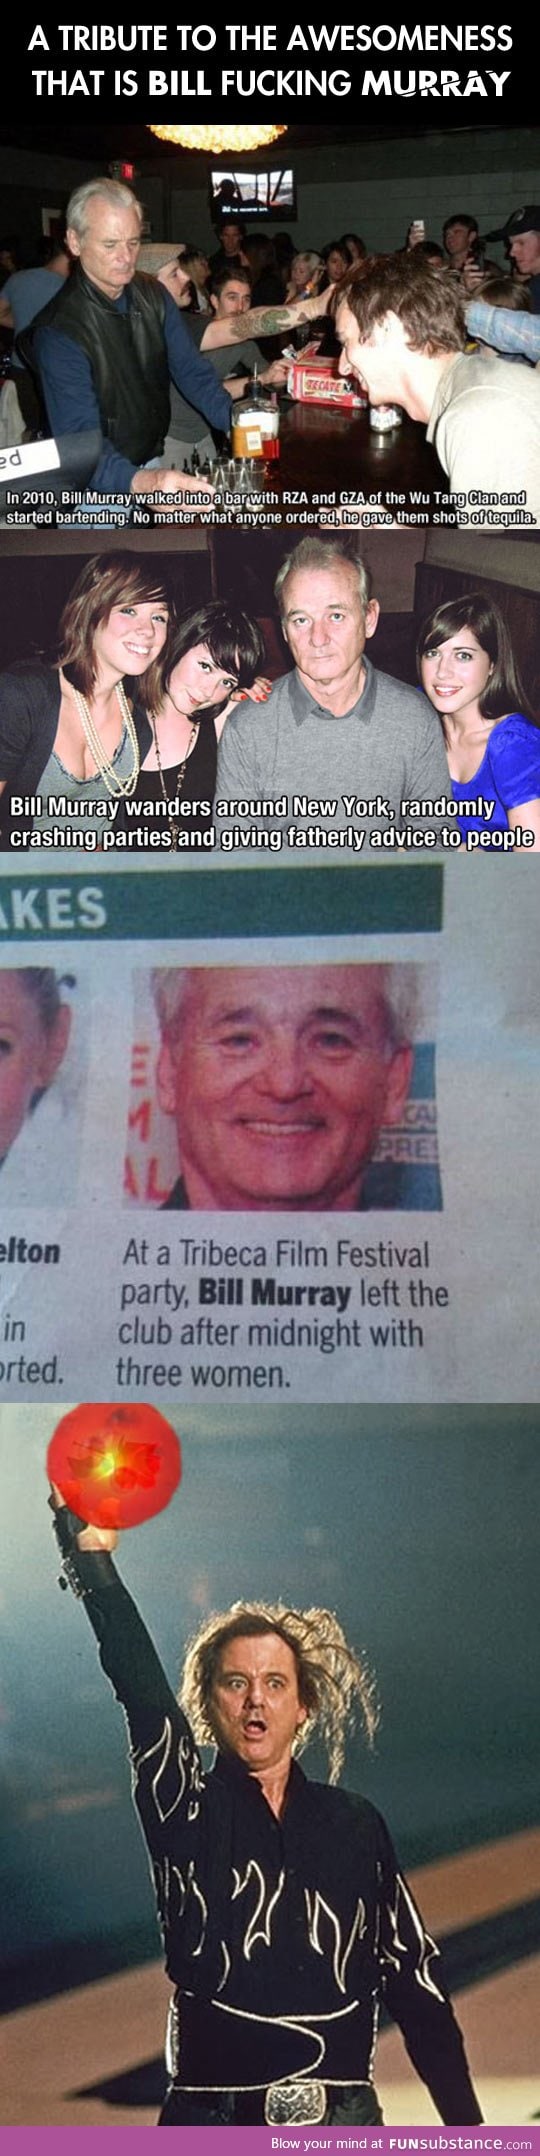 Bill Murray tribute